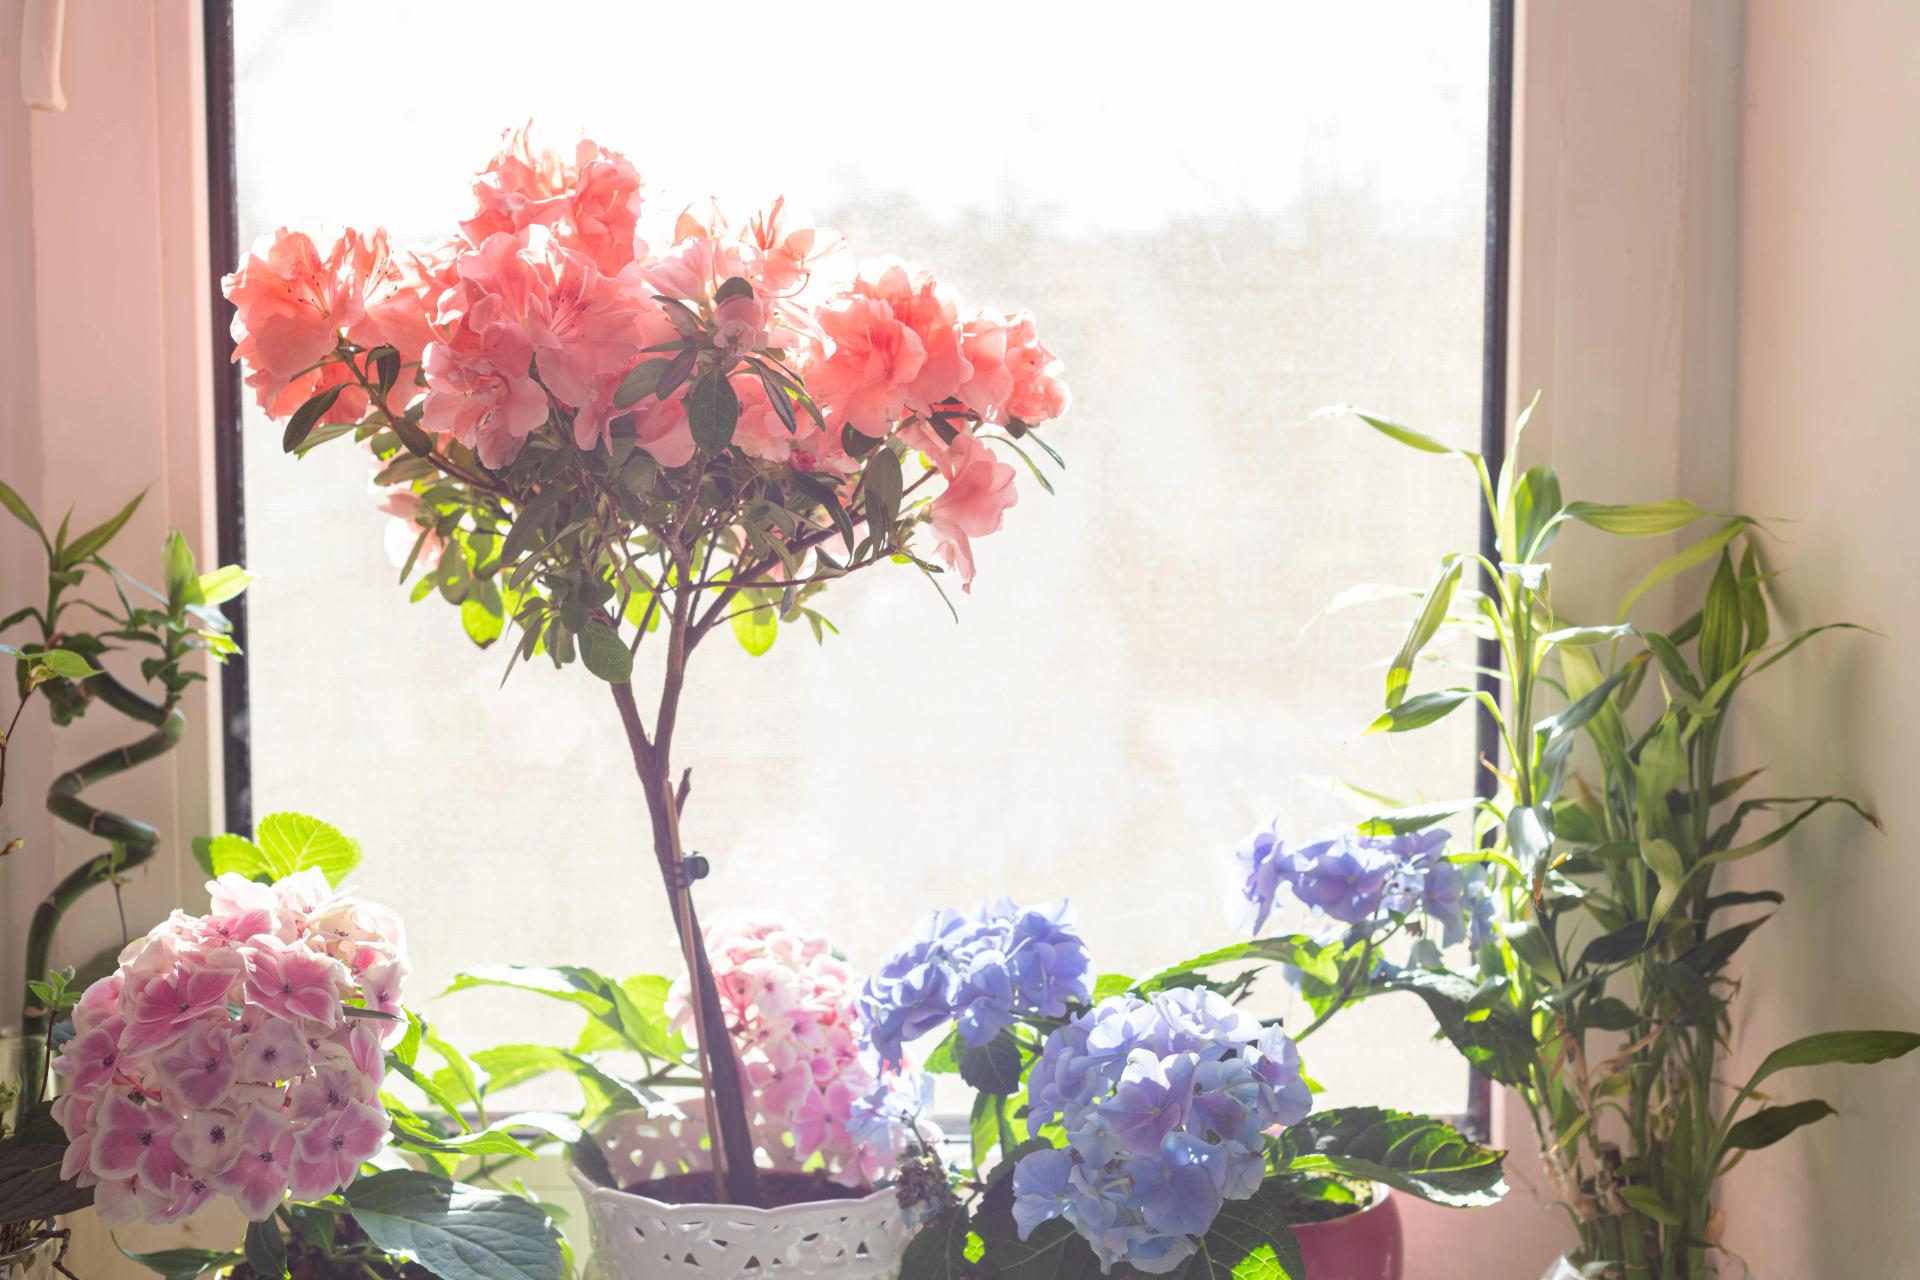 house-plants-in-window-in-spring-flowering-home-h-2022-01-03-23-00-09-utc-min.jpg